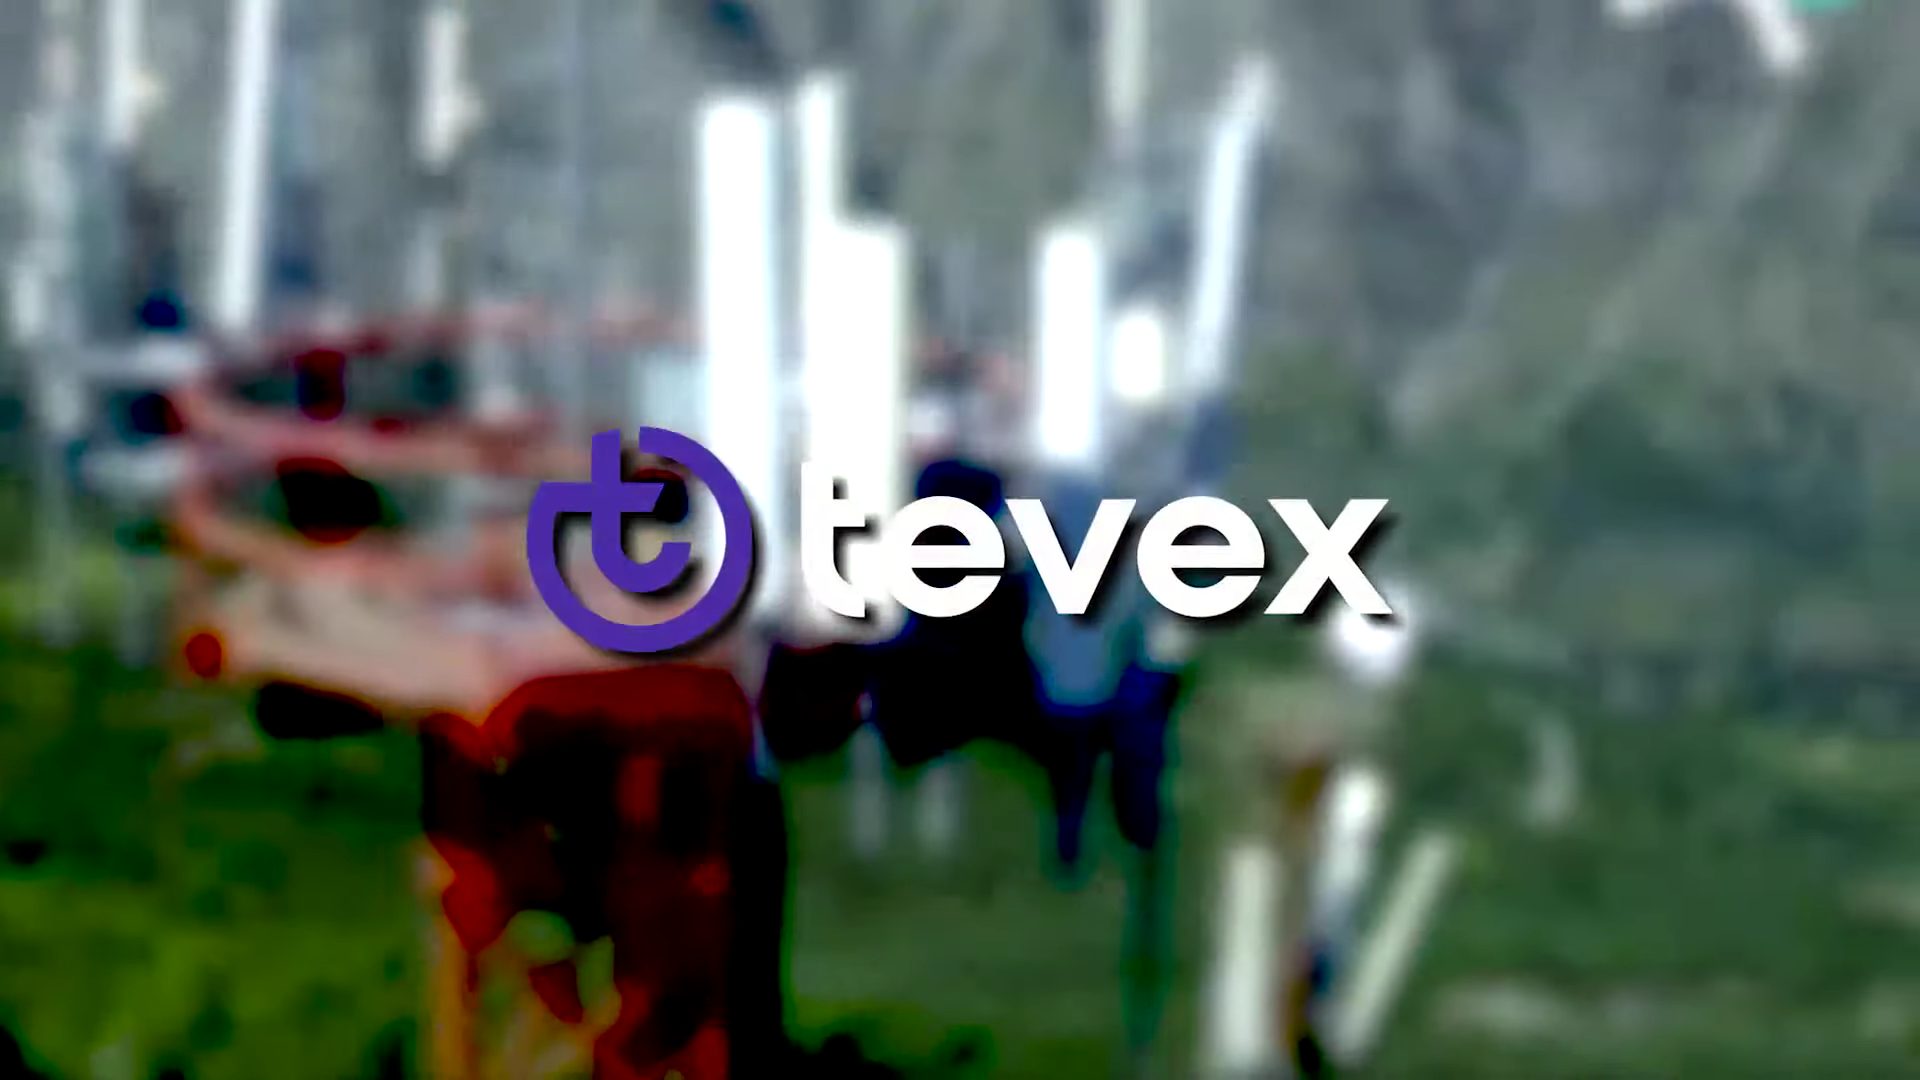 Tevex